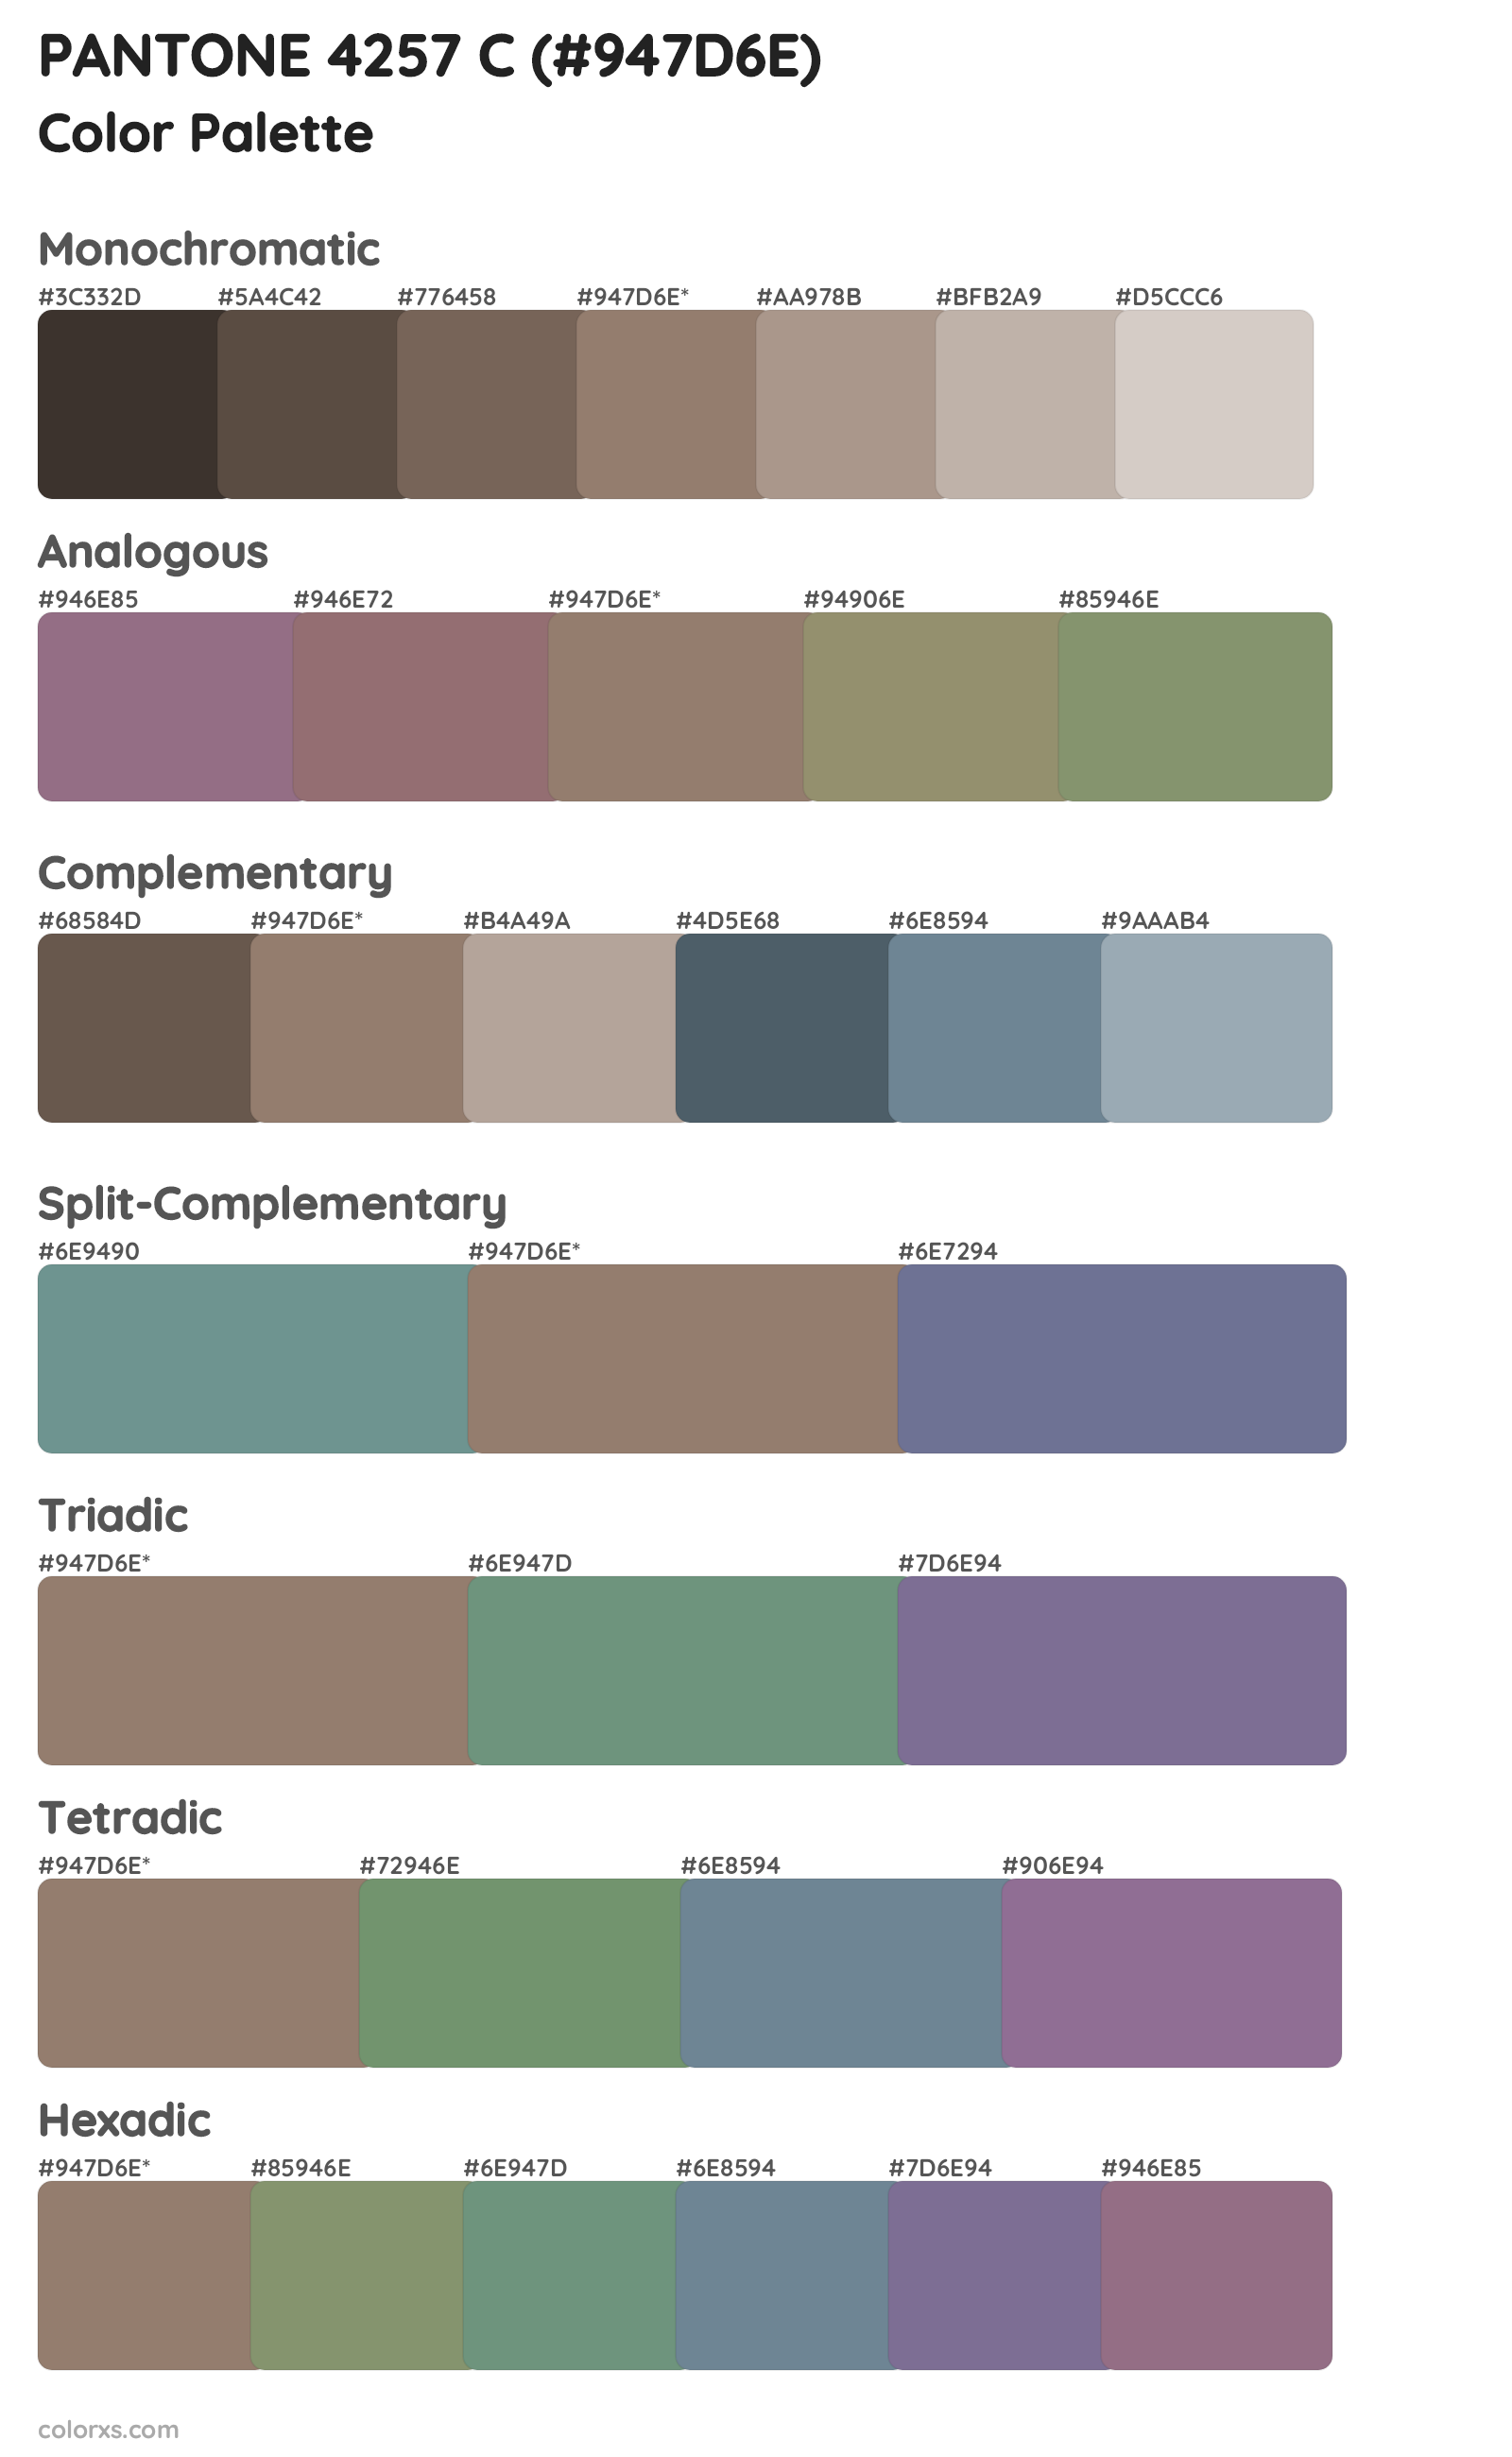 PANTONE 4257 C Color Scheme Palettes